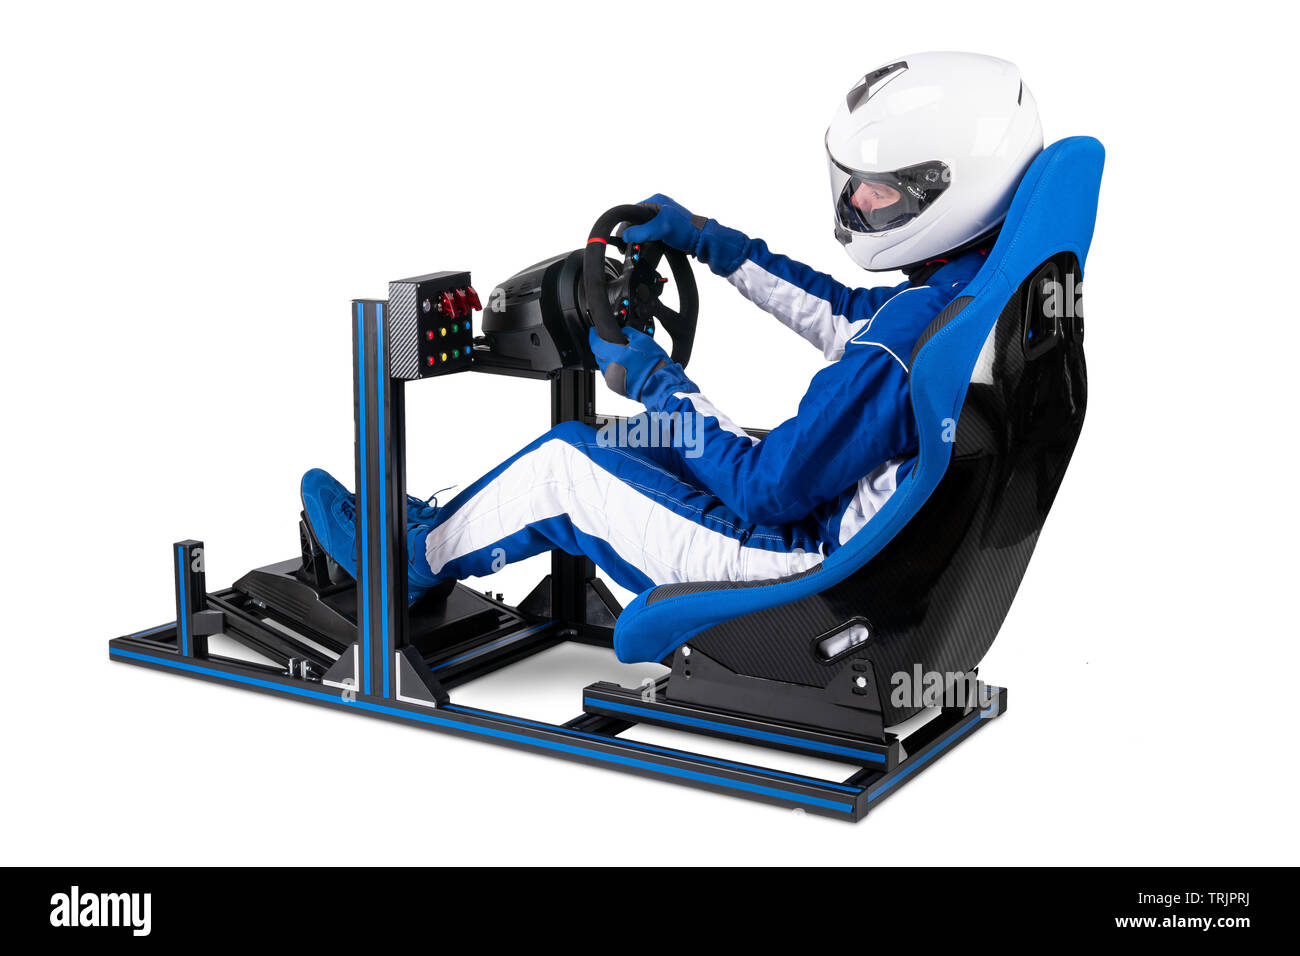 Race Driver in Blau insgesamt mit Helm, das auf simracing